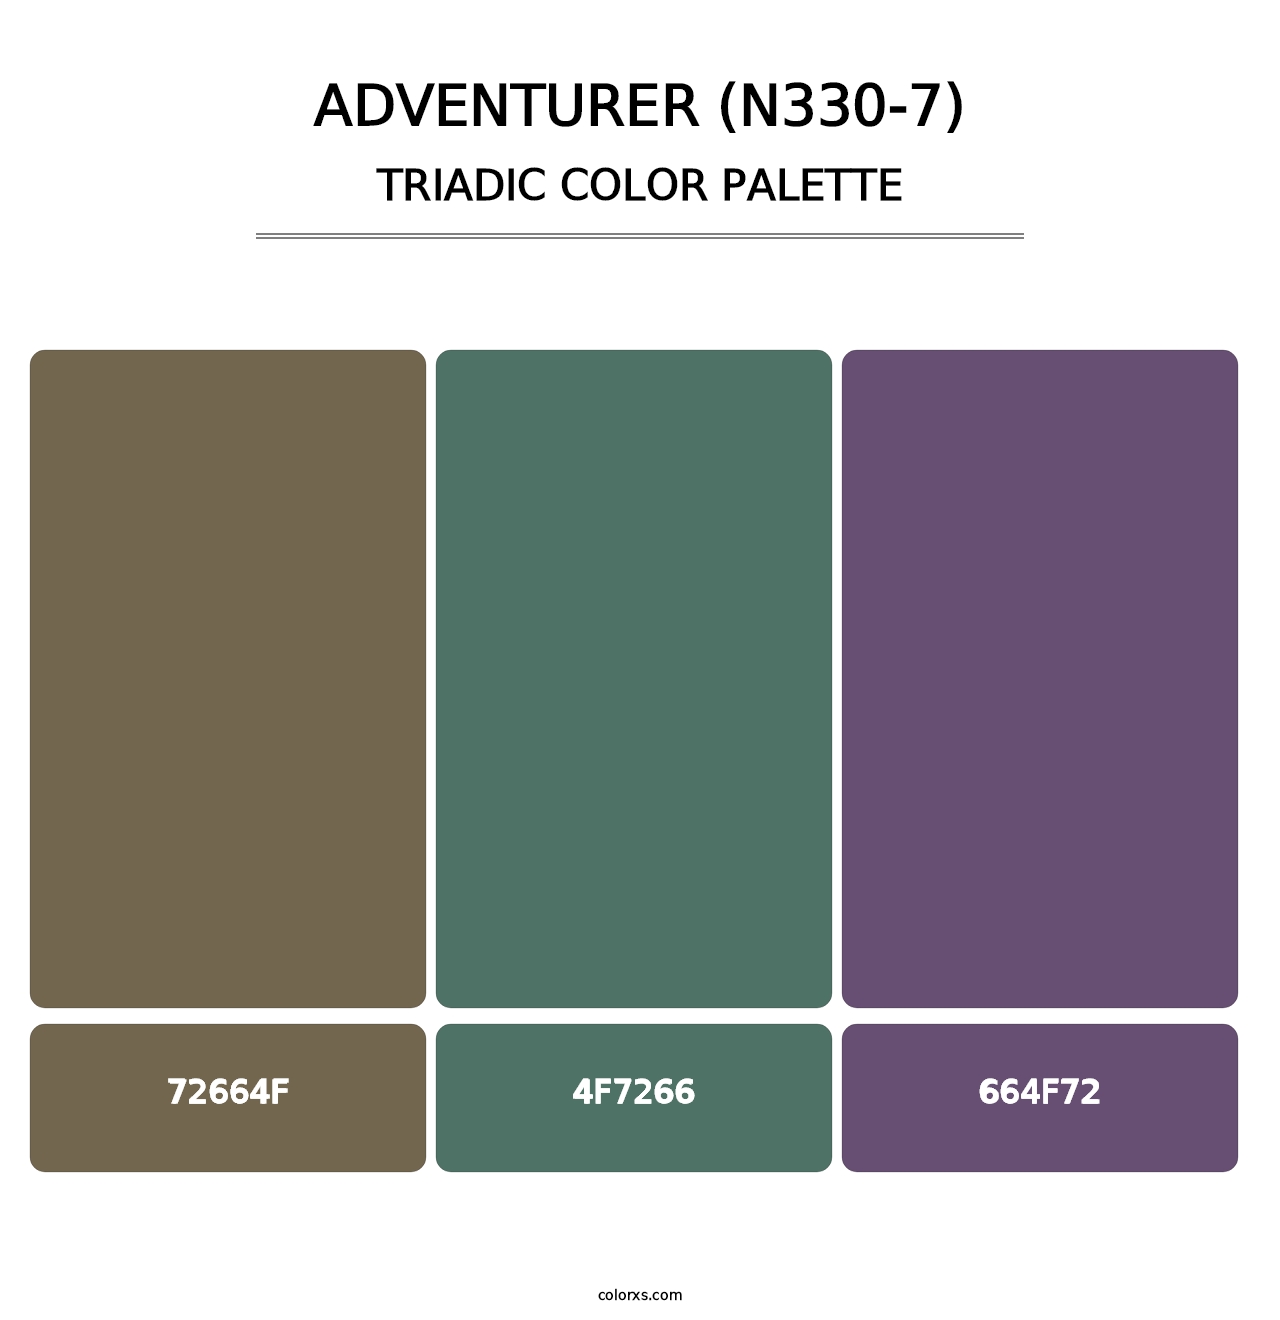 Adventurer (N330-7) - Triadic Color Palette